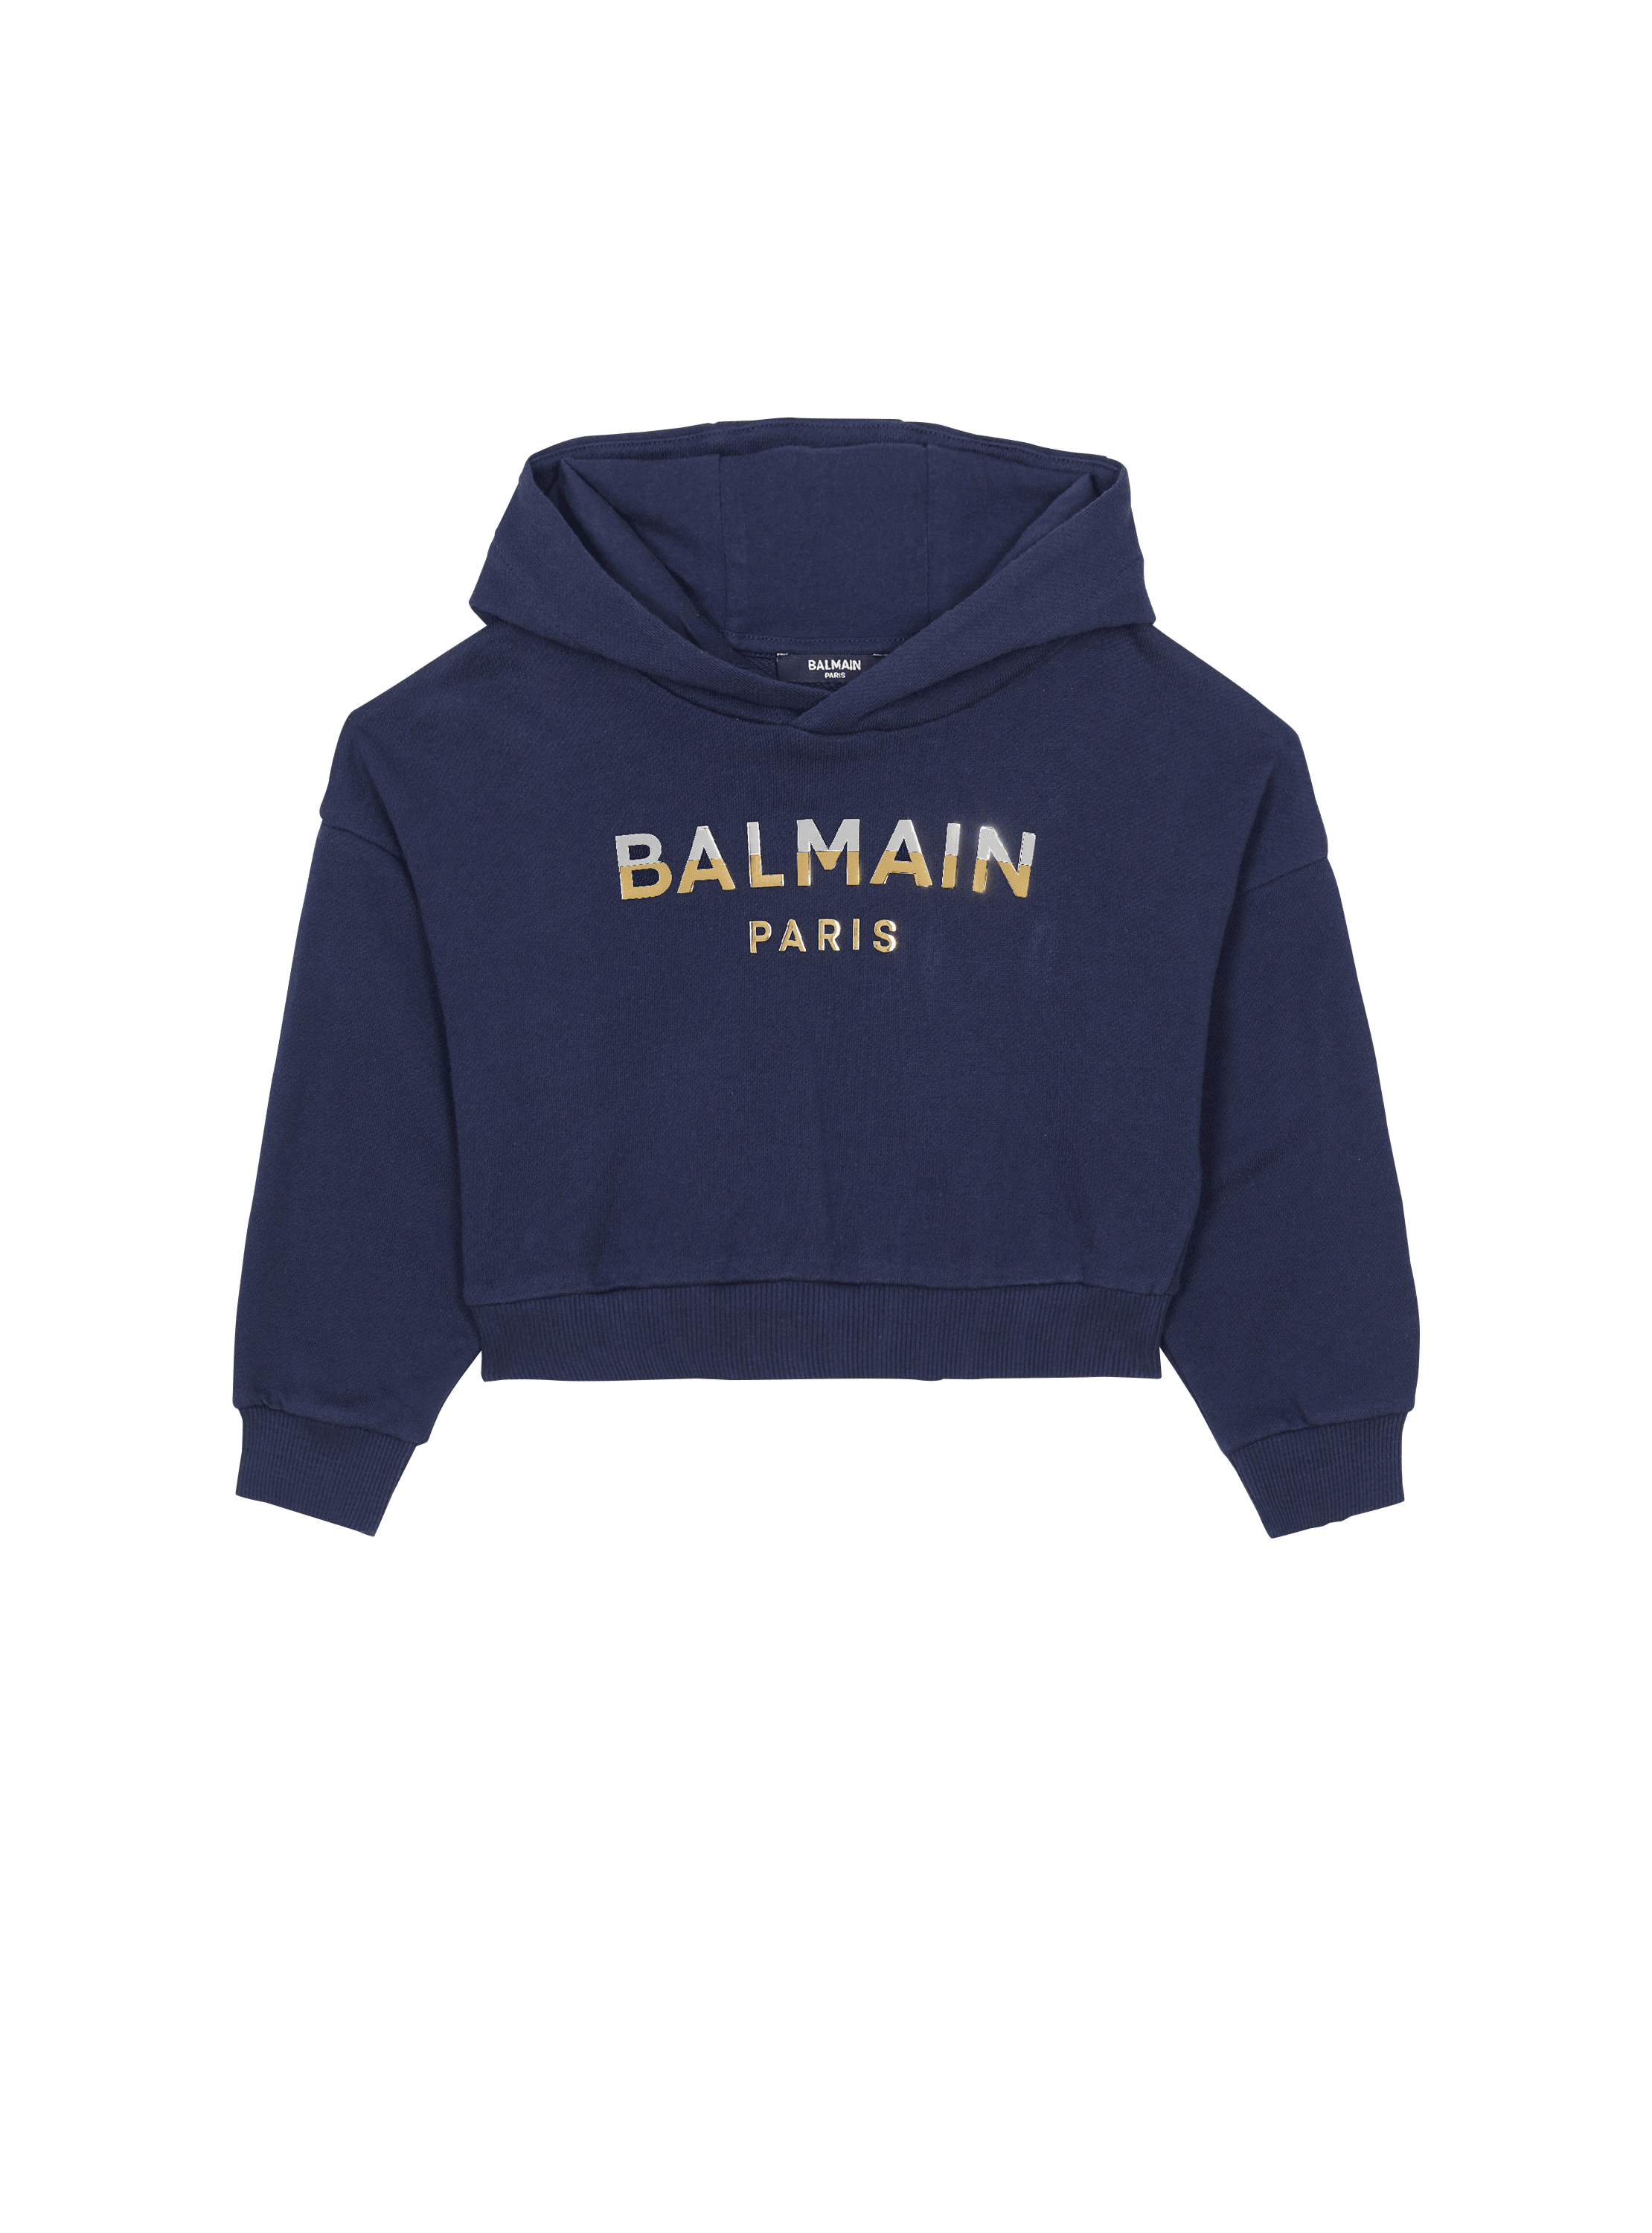 Balmain Paris hoodie